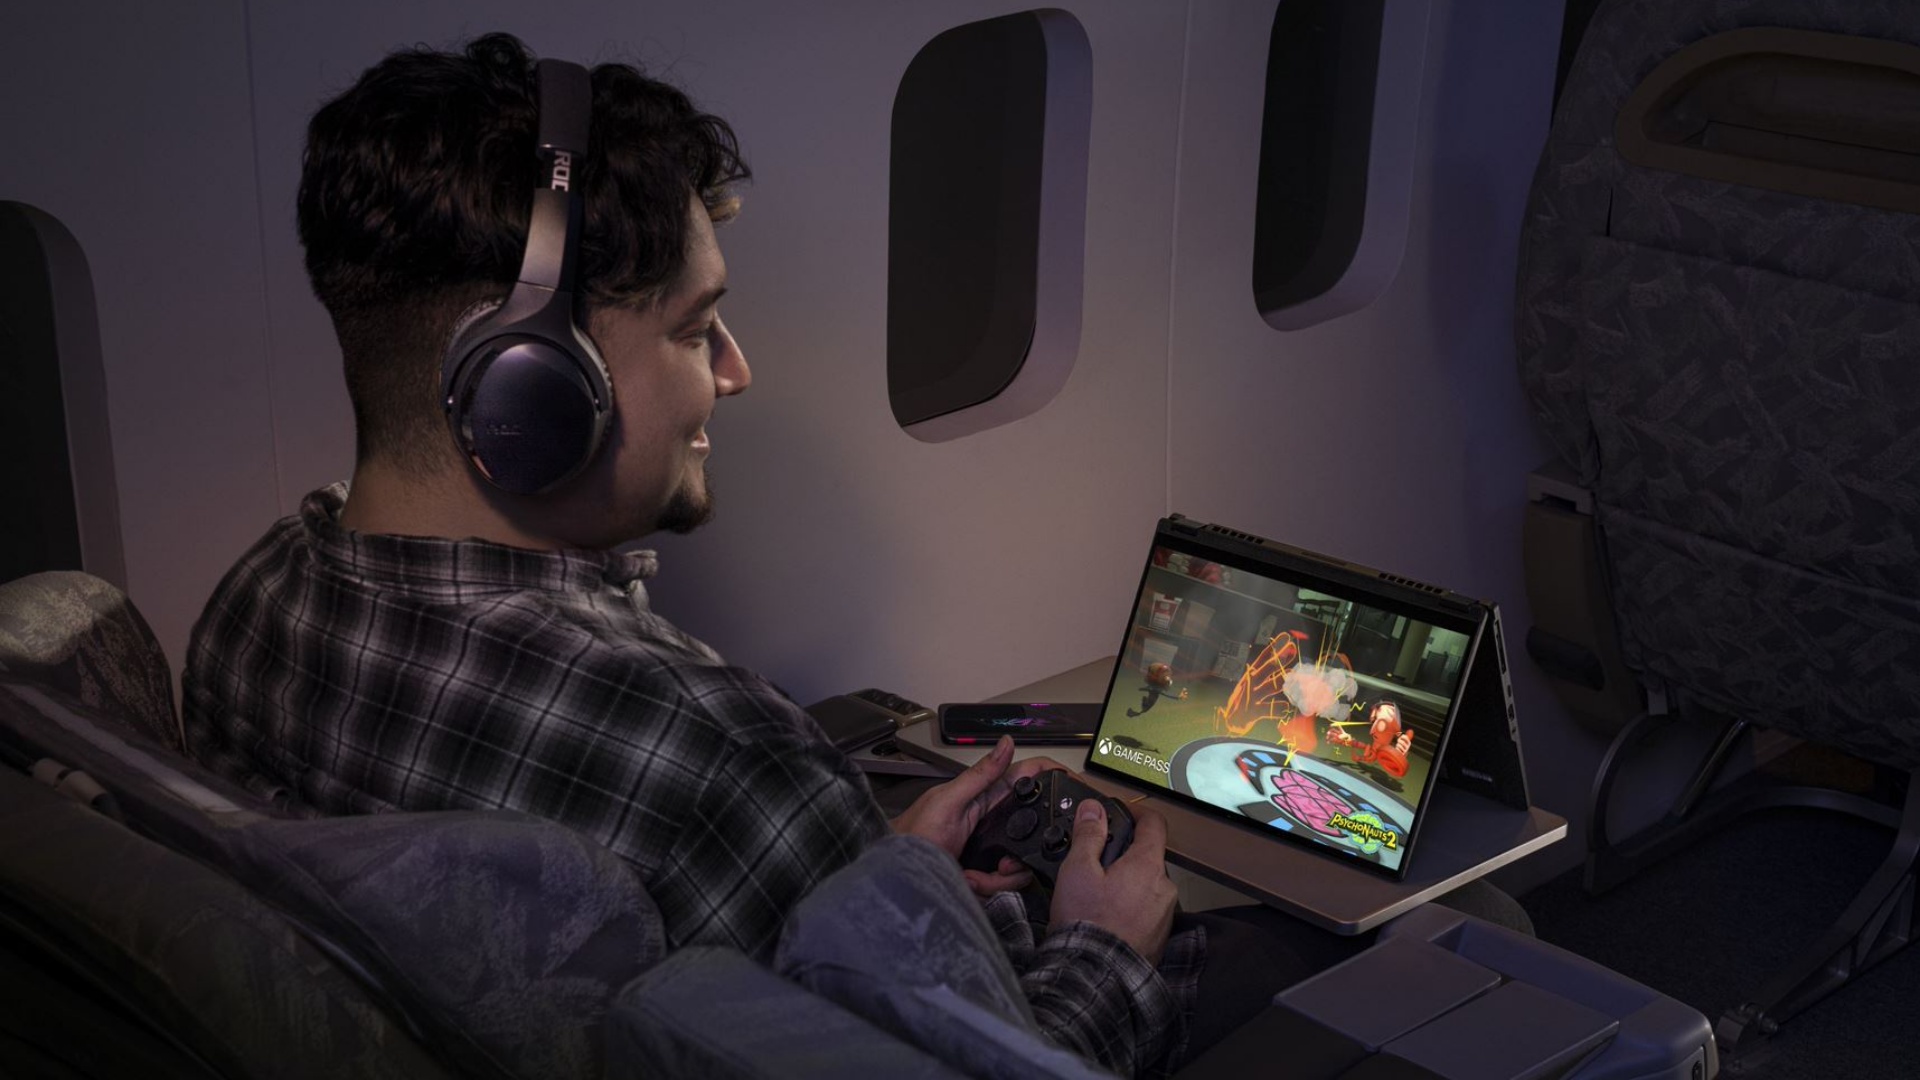 ASUS ROG giới thiệu loạt Laptop Gaming đỉnh cấp tại CES 2023